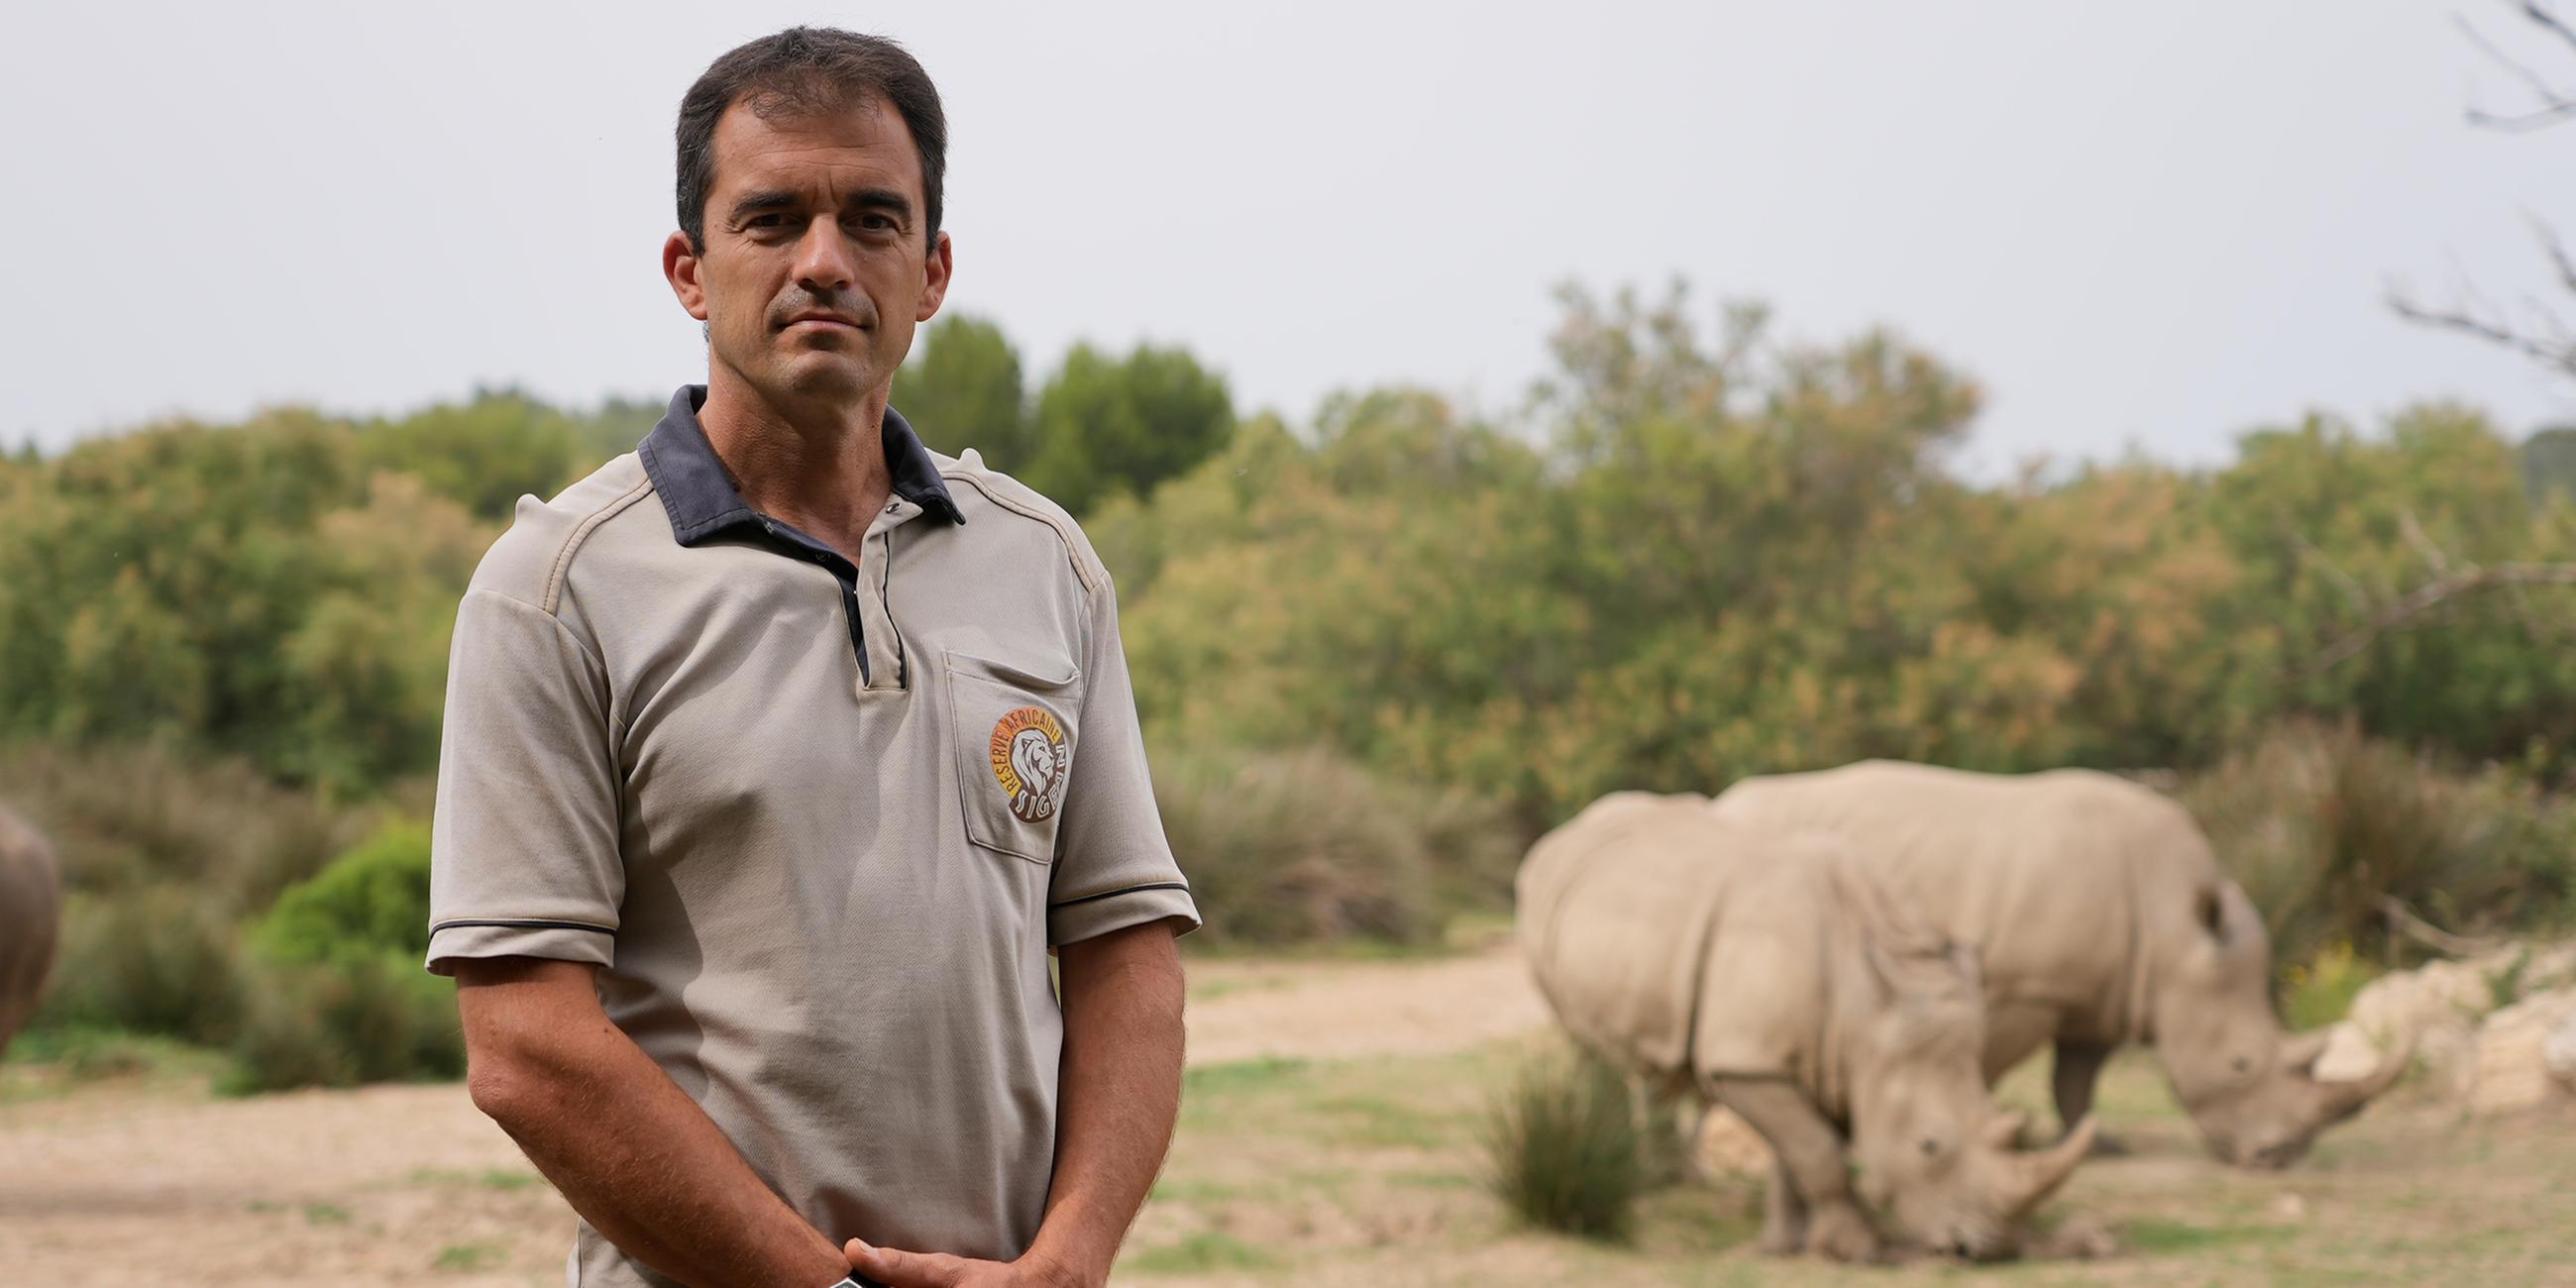 Zoodirektor Antoine Joris leitet das Réserve Africaine de Sigean - eine „afrikanische“ Savanne an der französischen Küste.